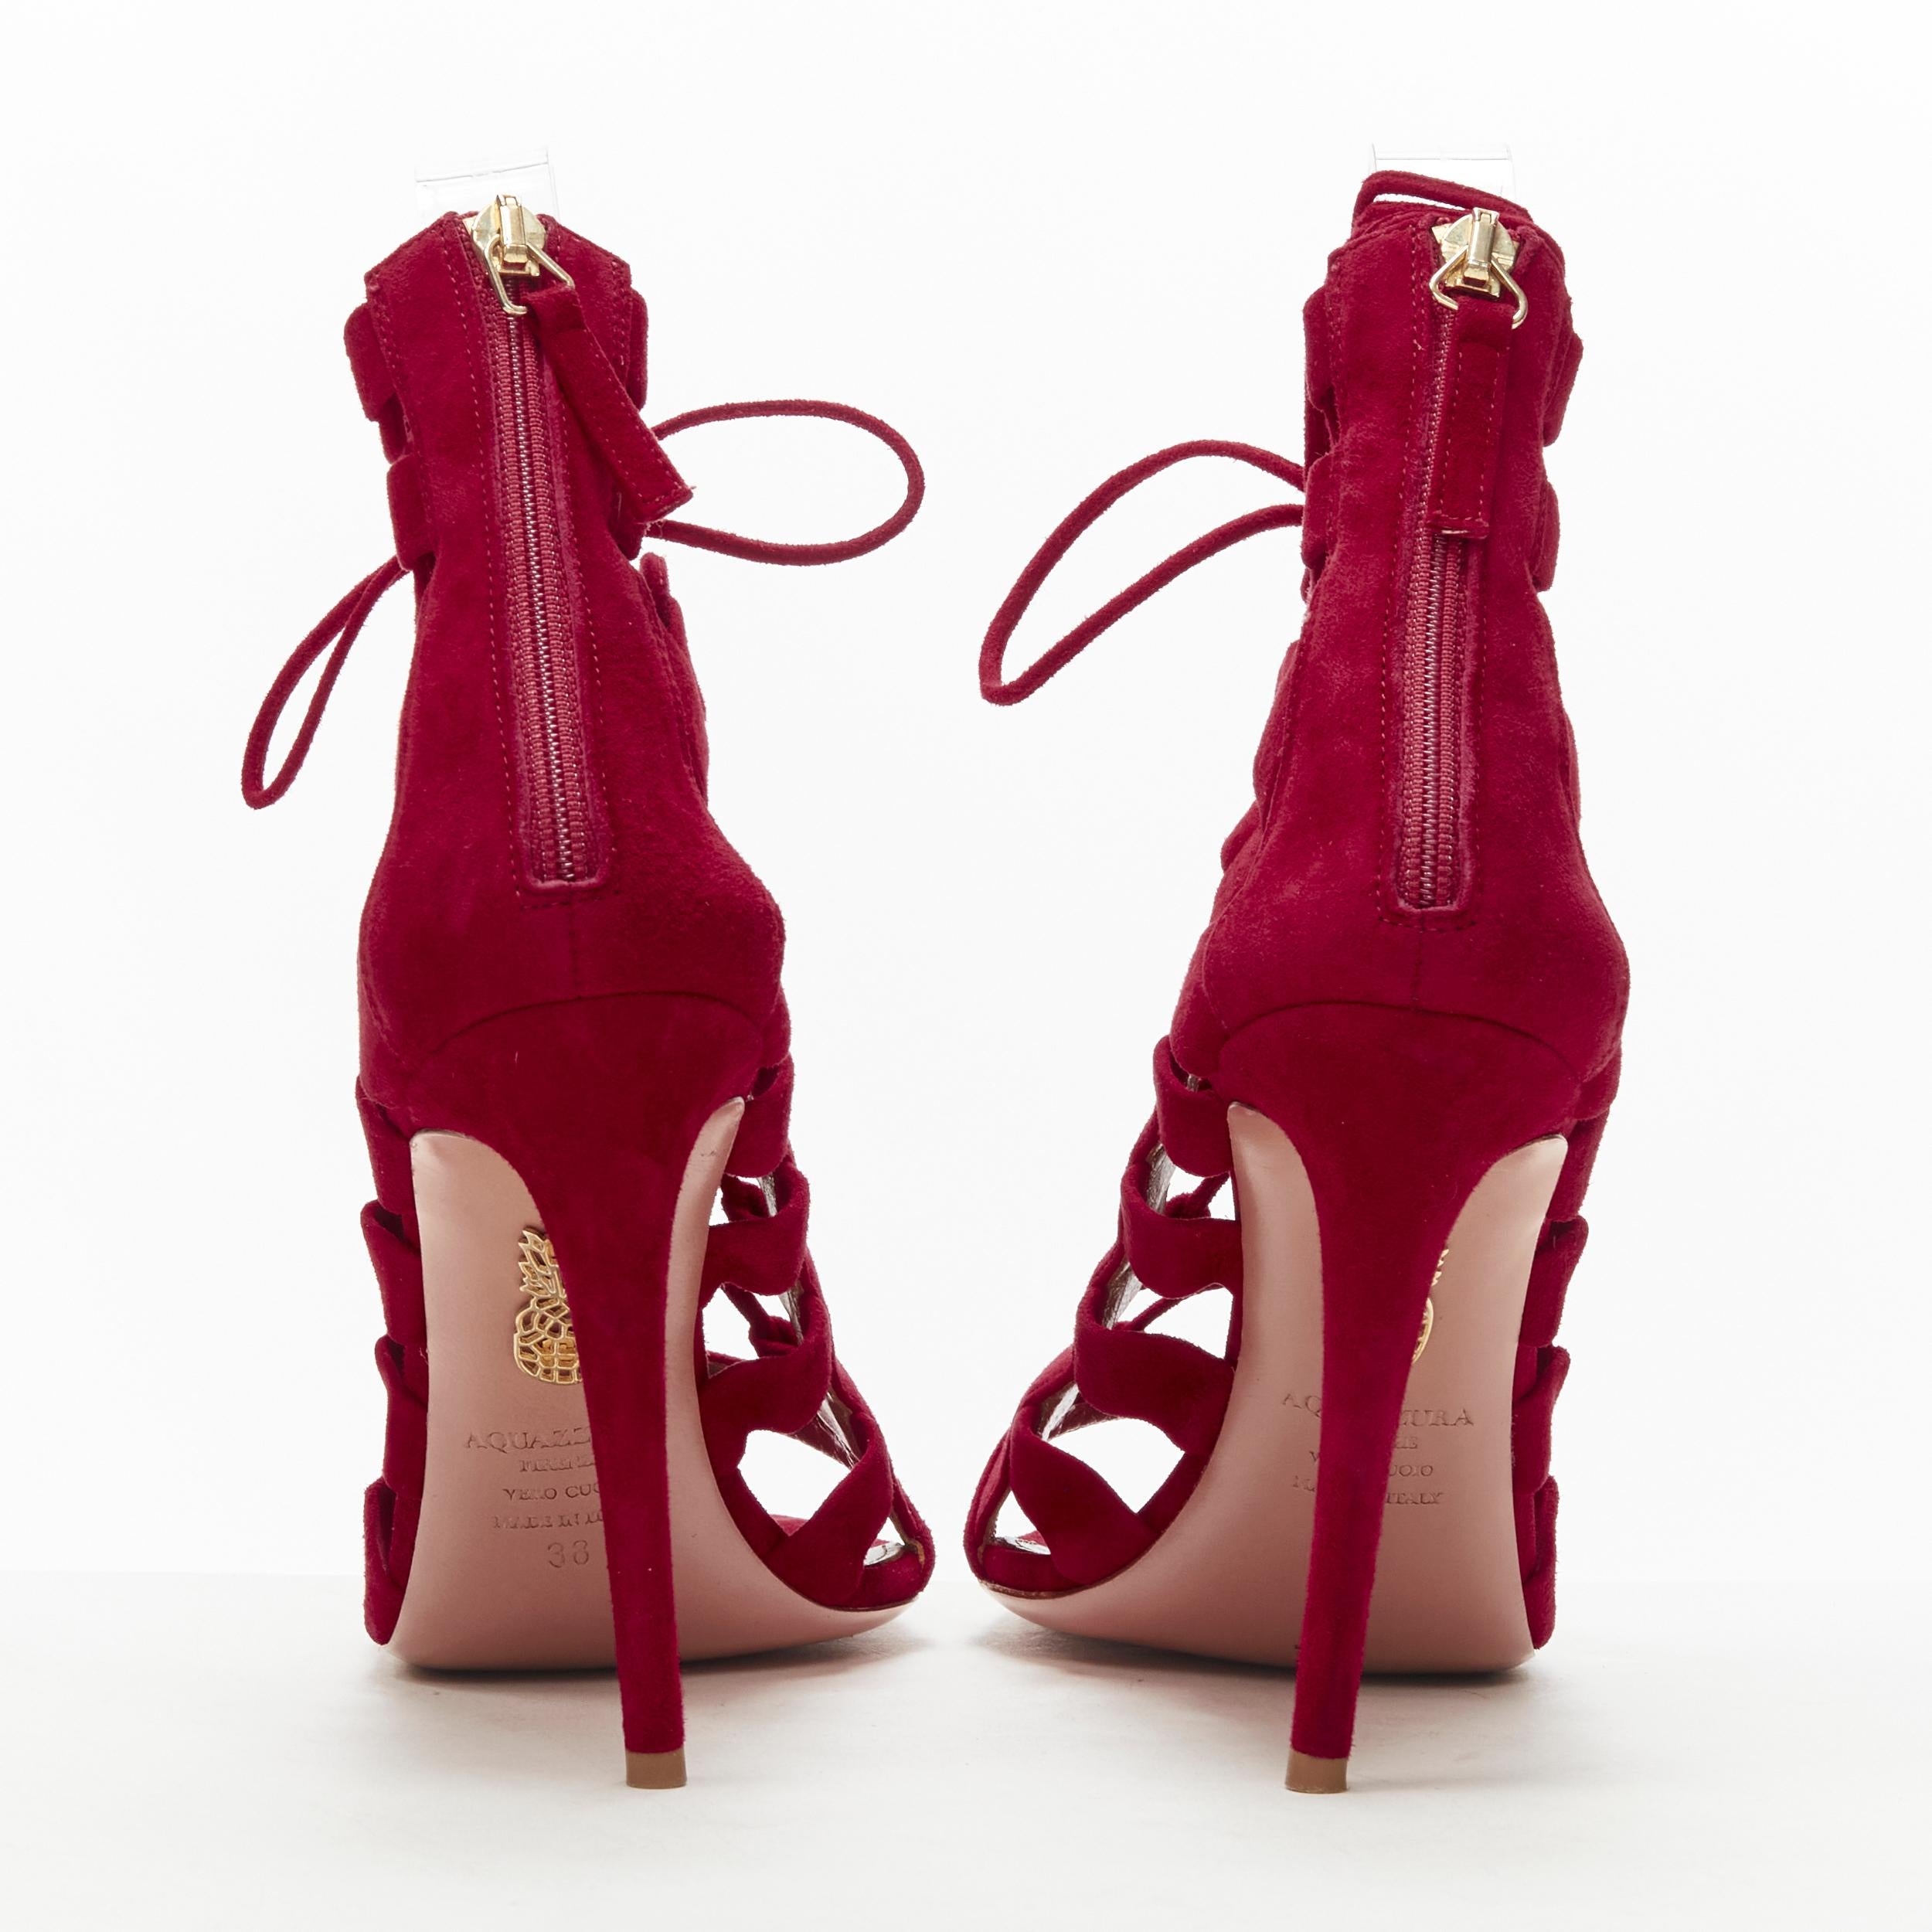 aquazzura red heels